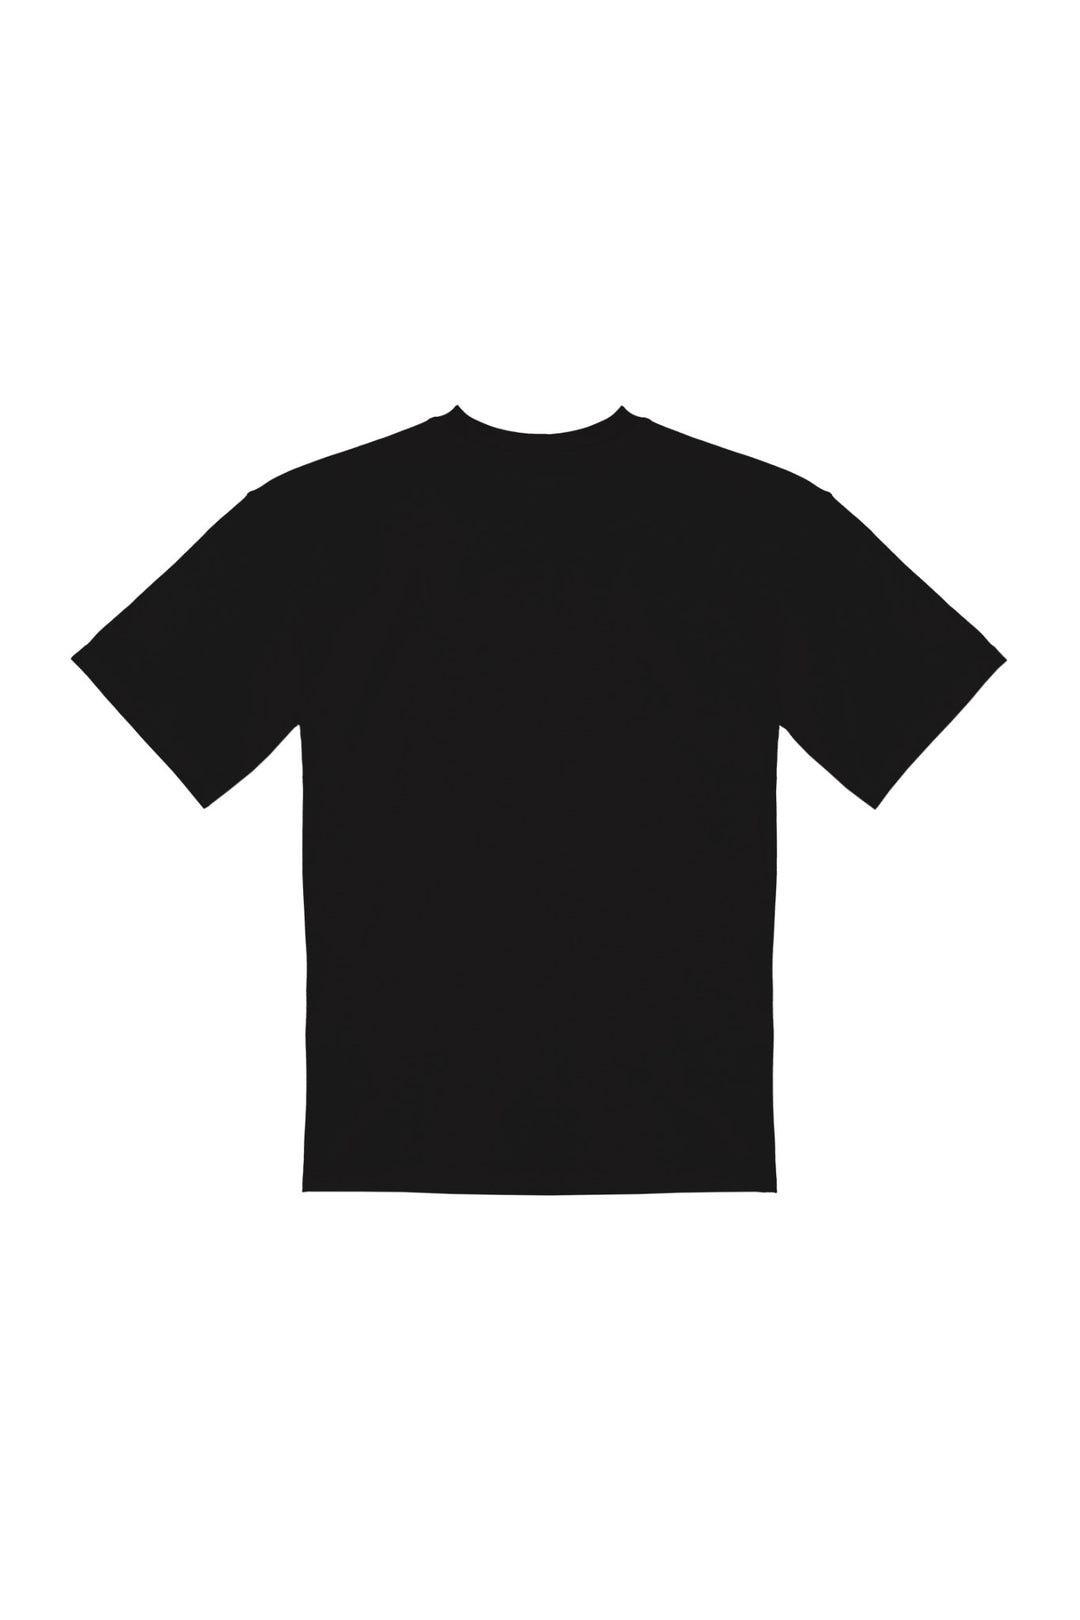 CHERISE・T - shirt unisexe・Noir - Le Cartel